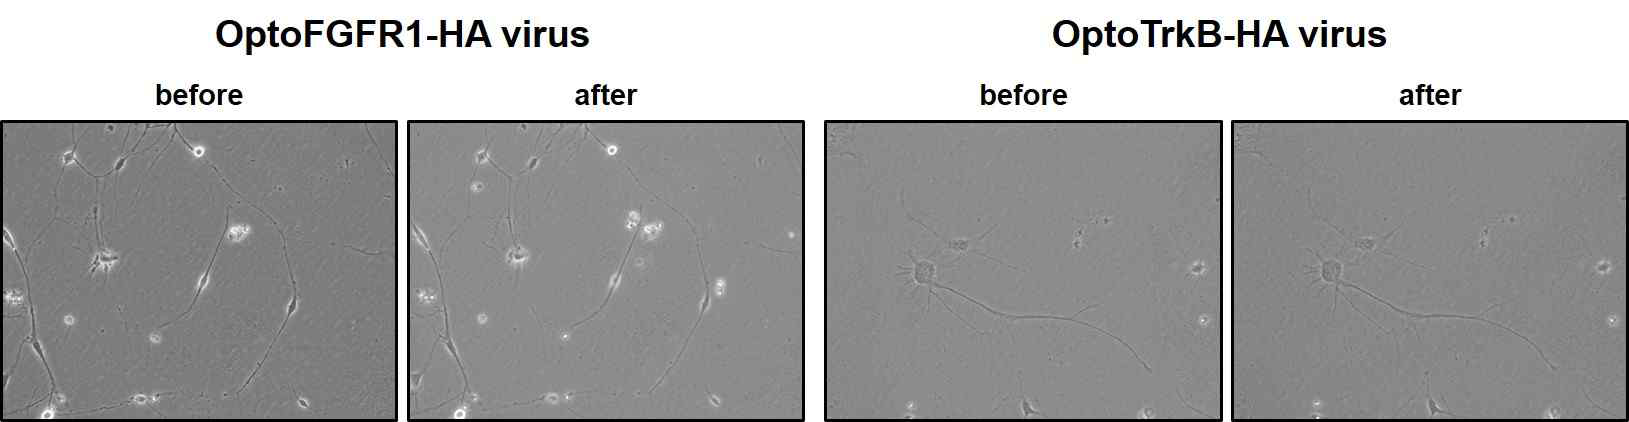 최적의 신경재생물질 (Opto-FGFR1-HA, OptoTrkB-HA virus) 처리와 LED 조사에 따른 dendrite 확장 이미징.